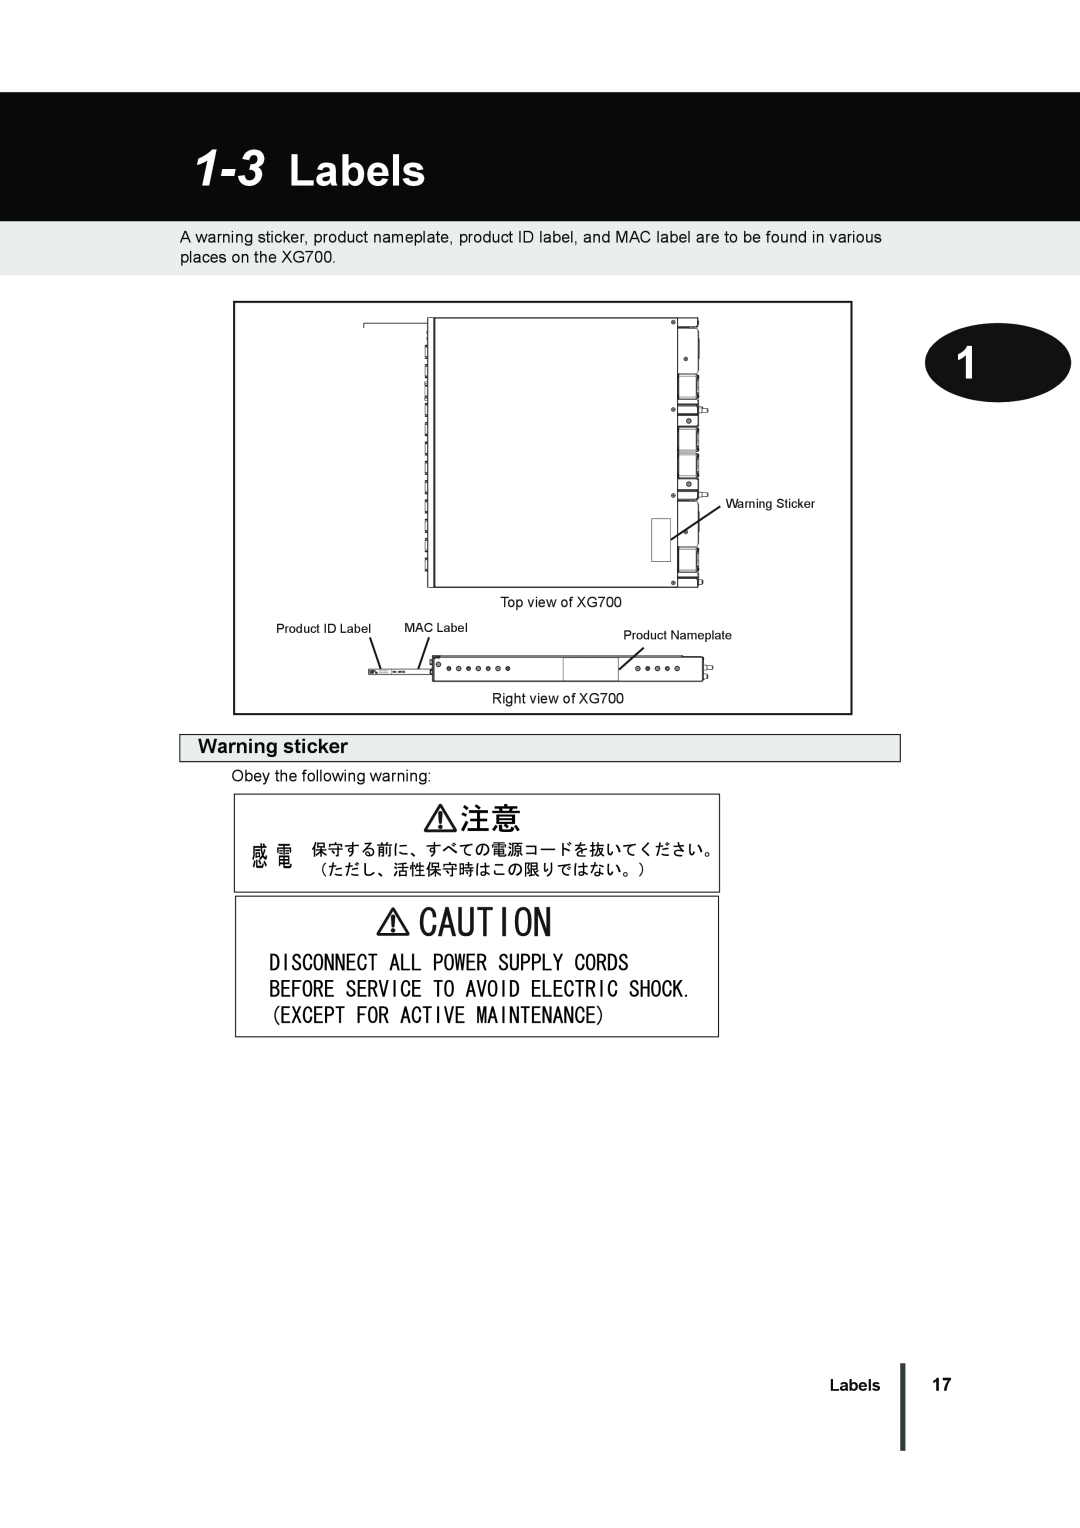 Fujitsu XG700 manual Labels, Warning sticker 